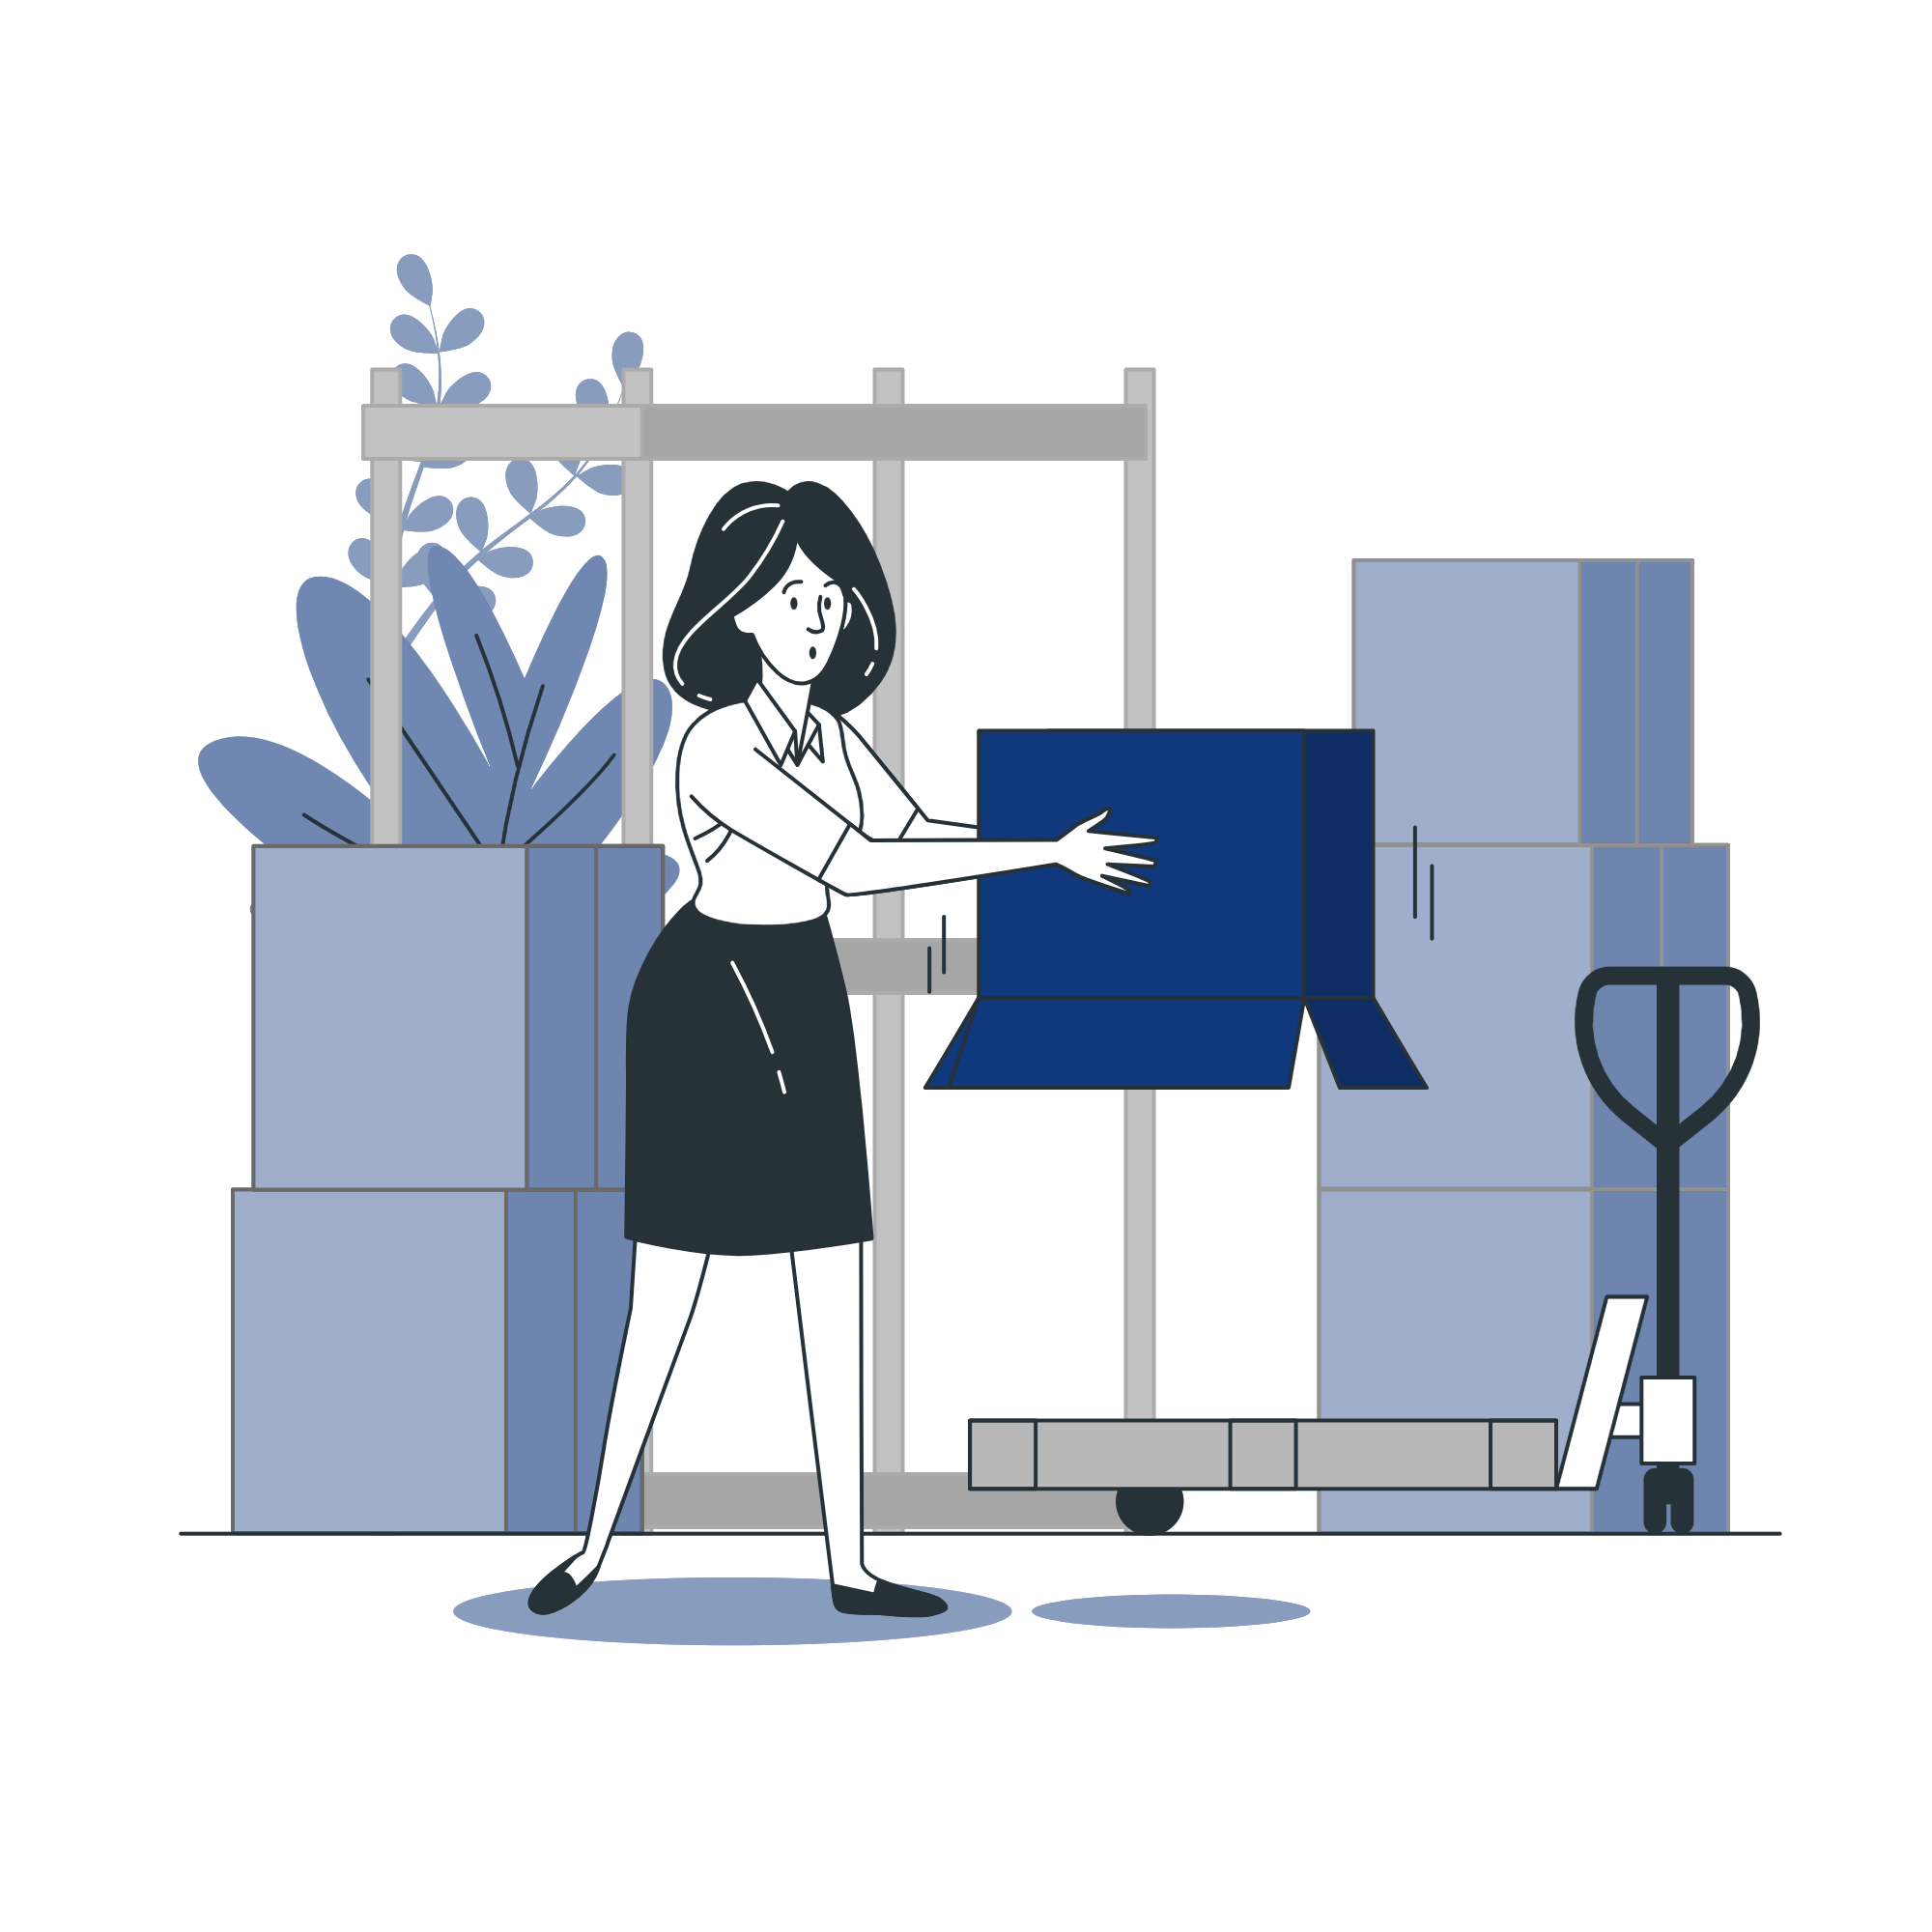 Illustração de uma mulher batendo uma caixa vazia.